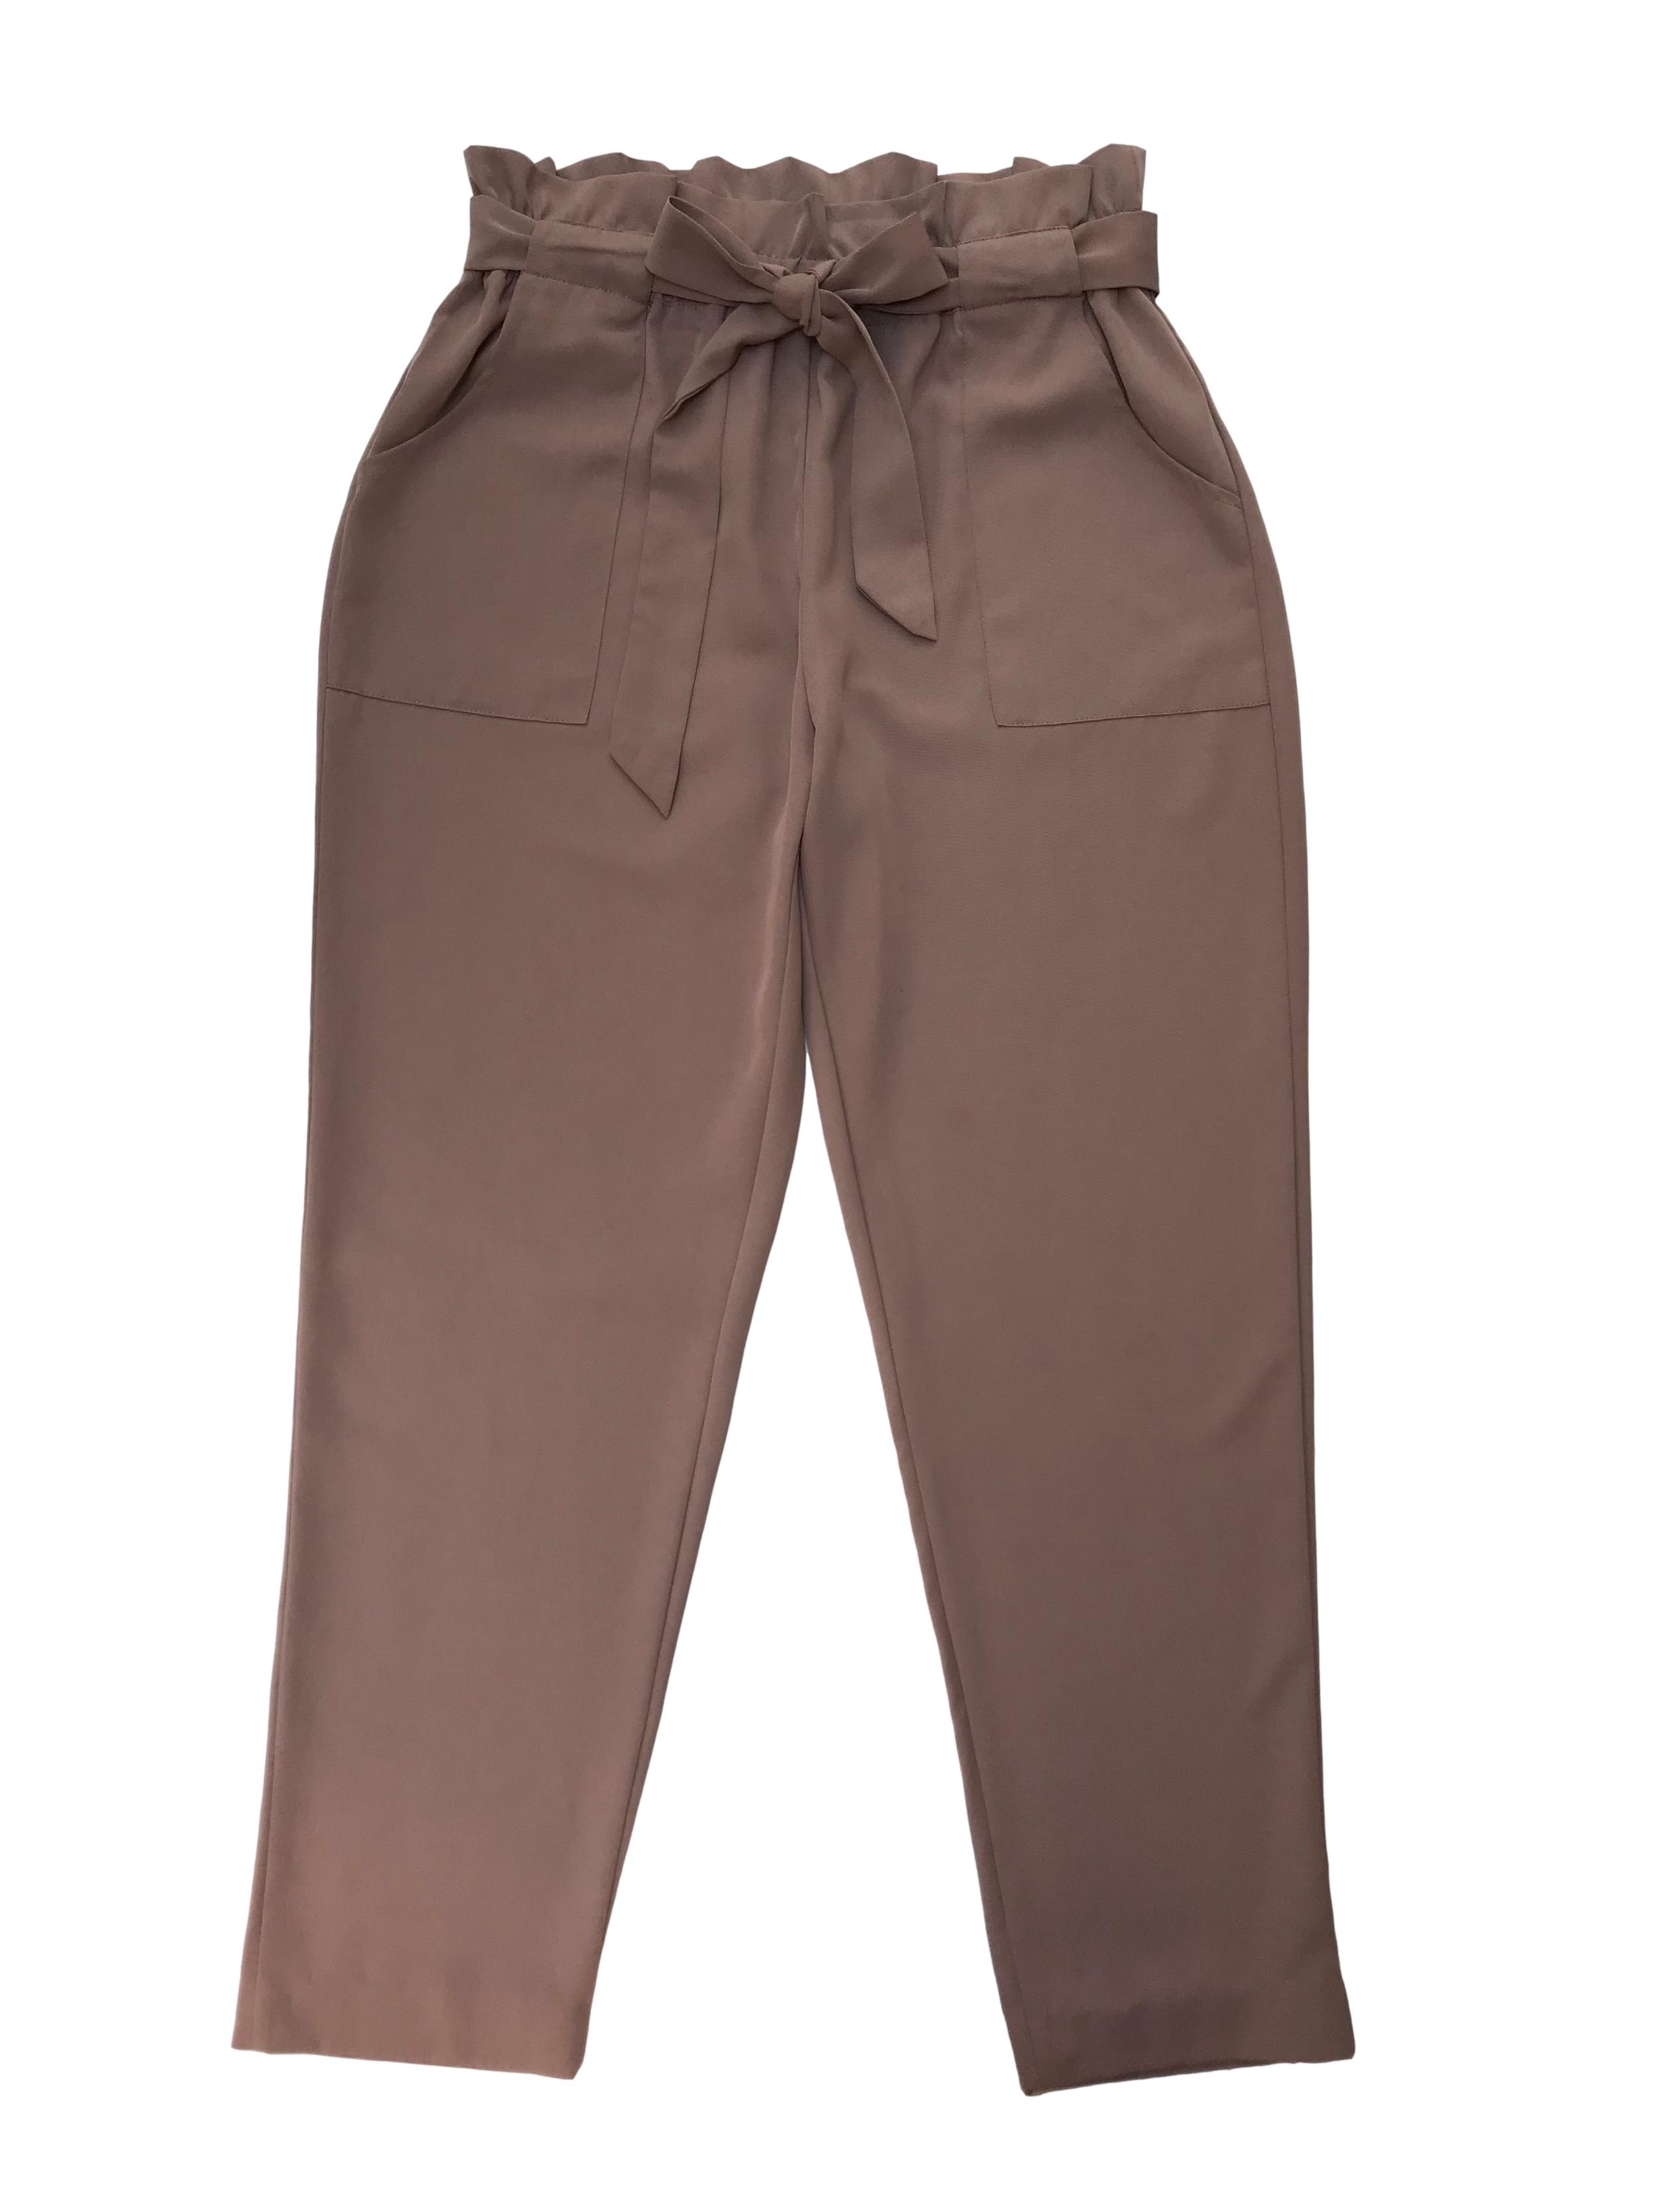 Pantalón paper bag beige de tela fluida, tiene bolsillos laterales y corte slim. Cintura 76cm sin estirar Cadera 110cm